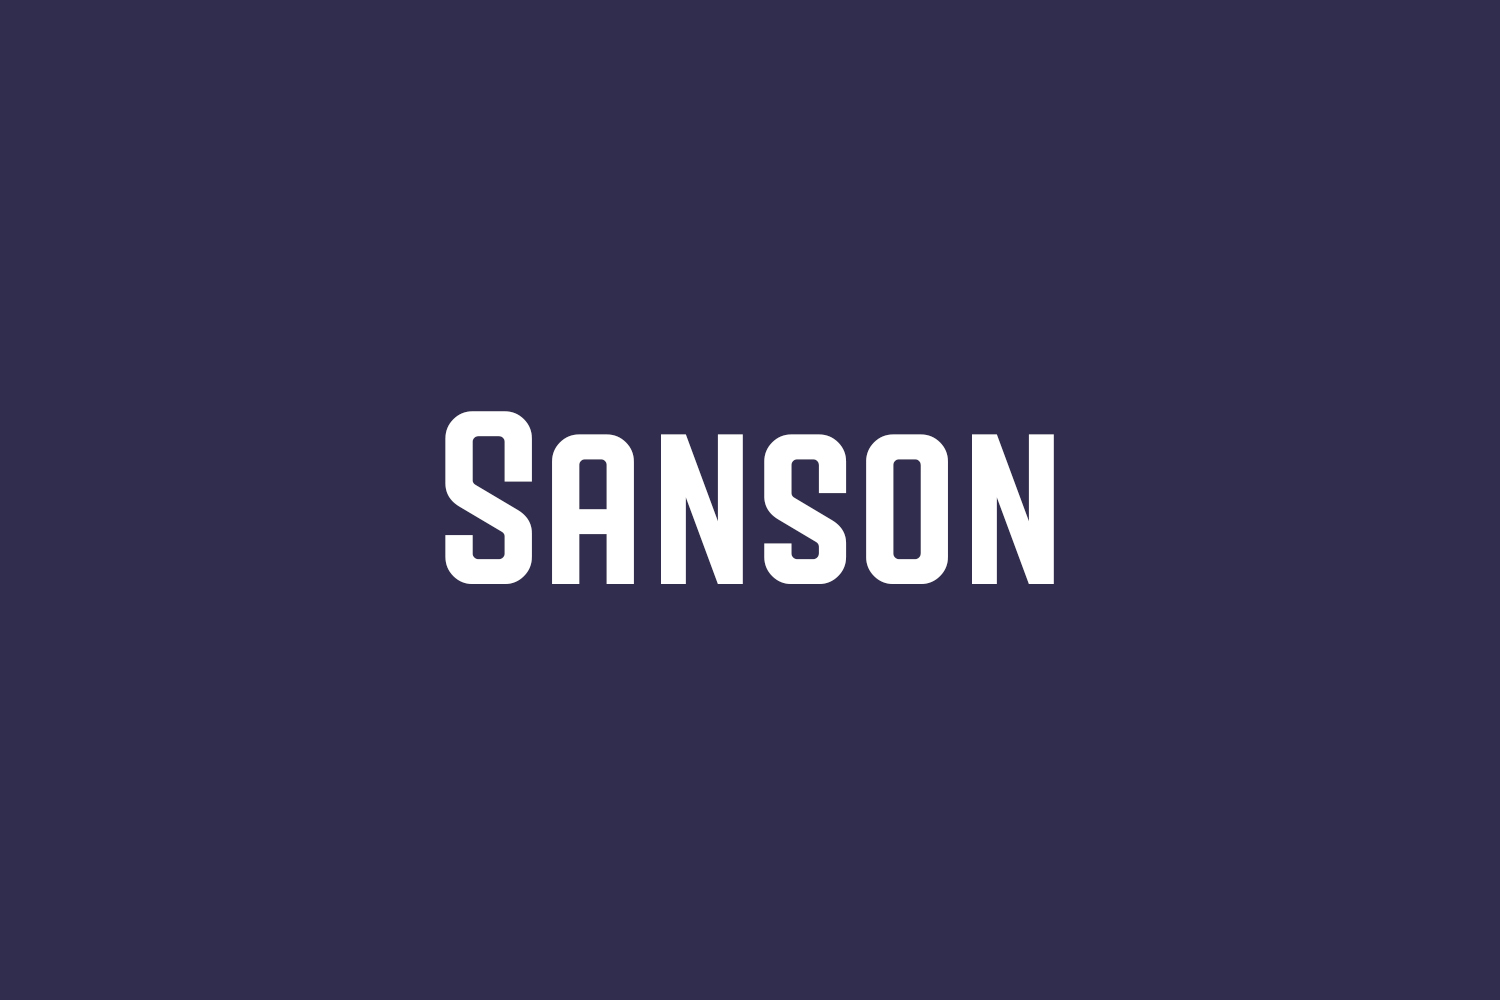 Sanson Free Font